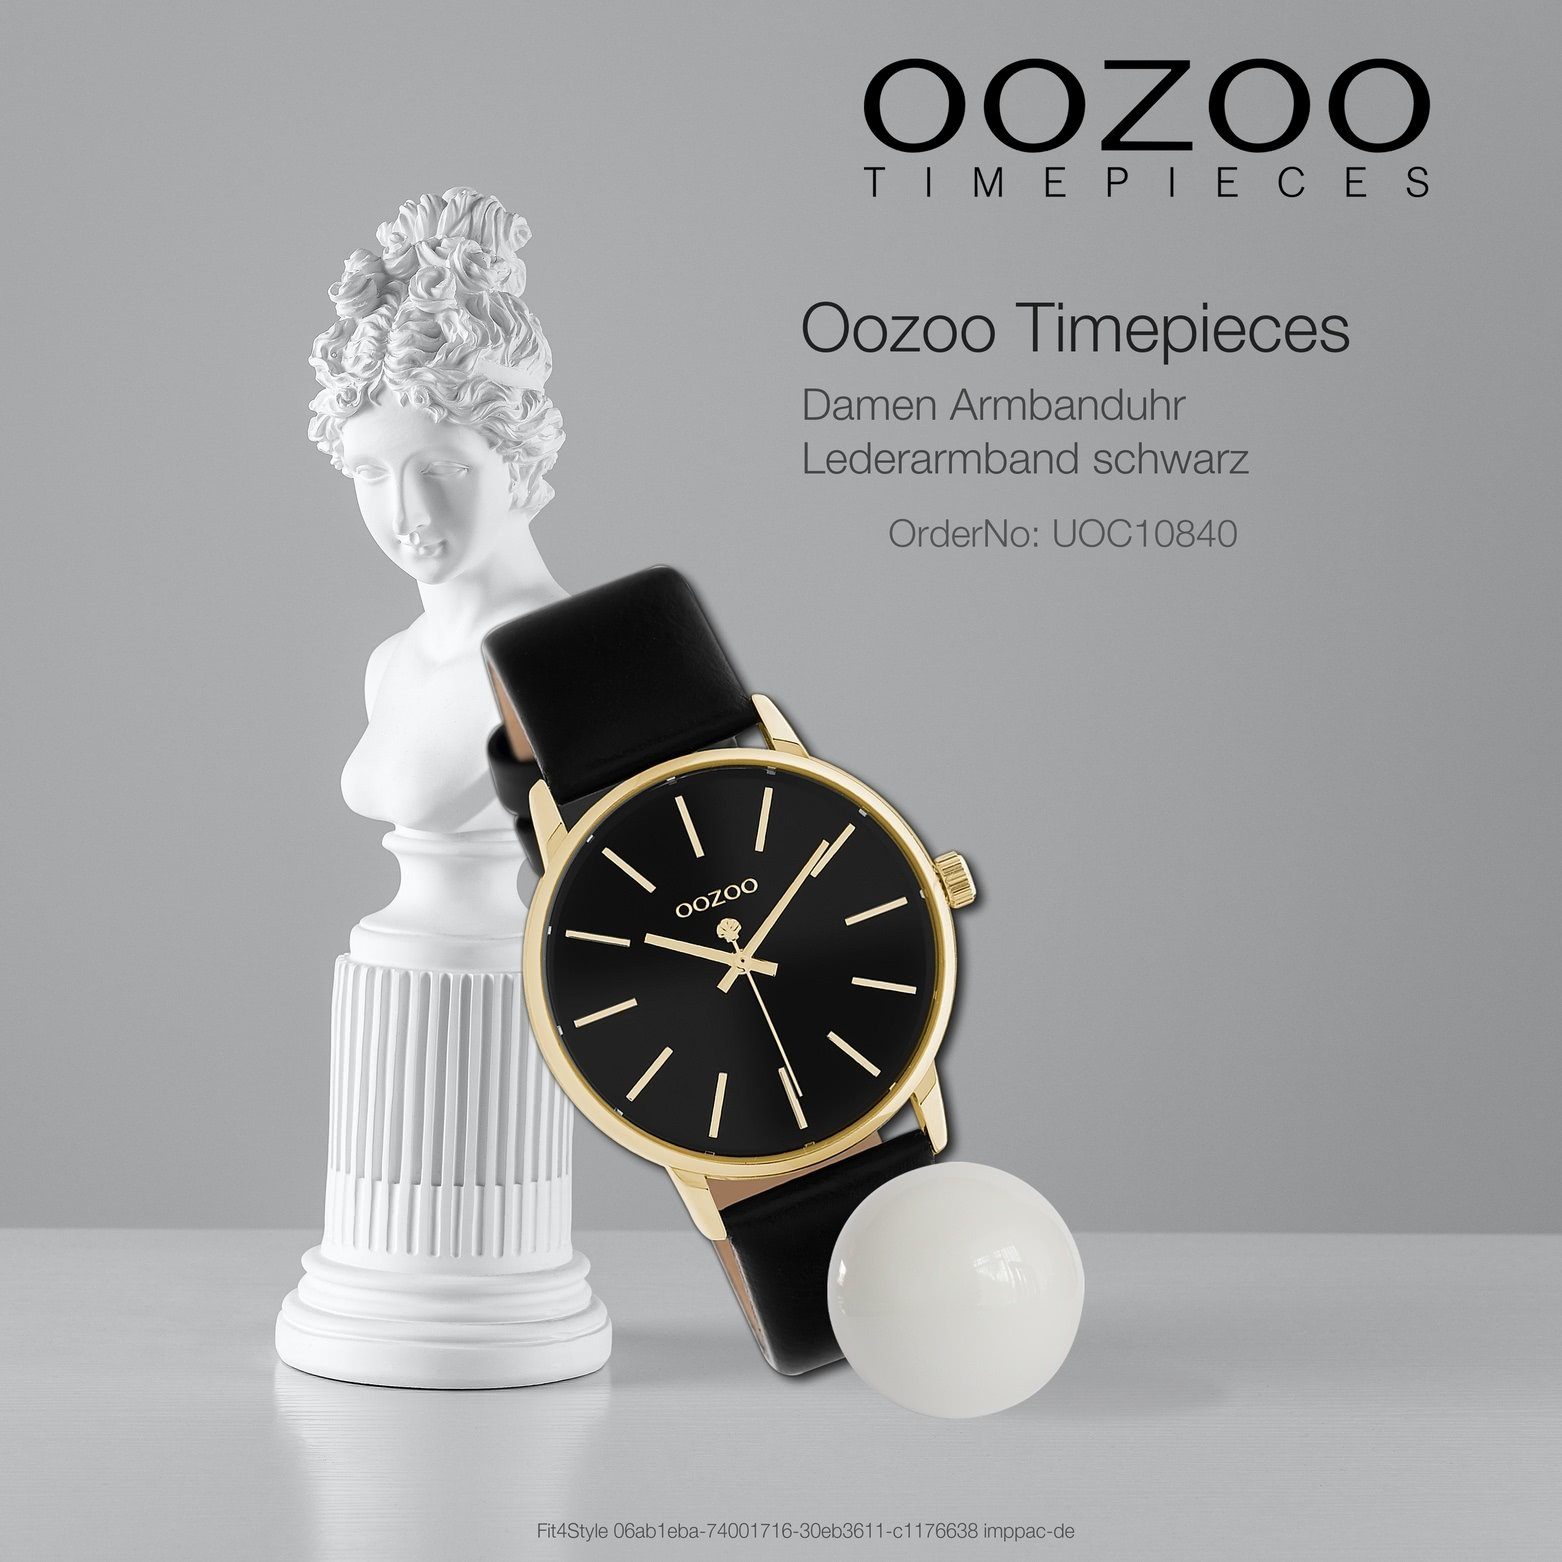 Lederarmband Oozoo OOZOO rund, Damen Armbanduhr 36mm), Timepieces, schwarz, Damenuhr mittel OOZOO Fashion Quarzuhr (ca.